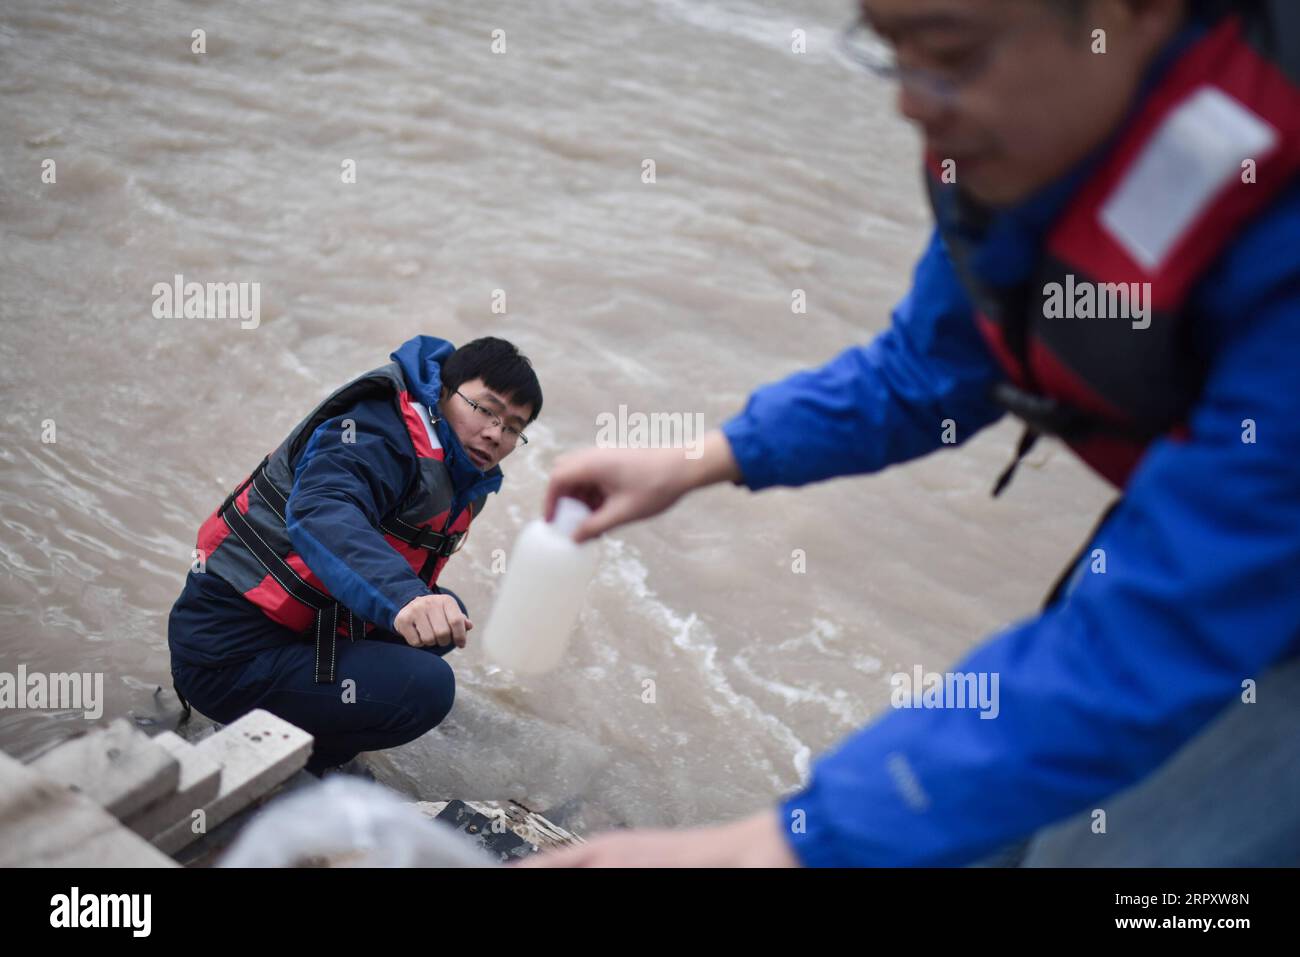 200603 -- XINING, le 3 juin 2020 -- Liu min L et Zhang Liangyuan, deux chercheurs de l'Institut de recherche scientifique du fleuve Yangzi Jiang, recueillent des échantillons d'eau d'une source du fleuve Yangzi Jiang, dans la province du Qinghai au nord-ouest de la Chine, le 8 août 2019. Sanjiangyuan, une réserve naturelle majeure du nord-ouest de la Chine, a vu sa couverture végétale augmenter en 2019, selon les dernières données de surveillance. Sanjiangyuan, qui signifie la source de trois rivières, abrite les sources des rivières Yangtze, Yellow et Lancang. La qualité de l'environnement est restée stable dans la région par rapport à l'année précédente, avec gr Banque D'Images